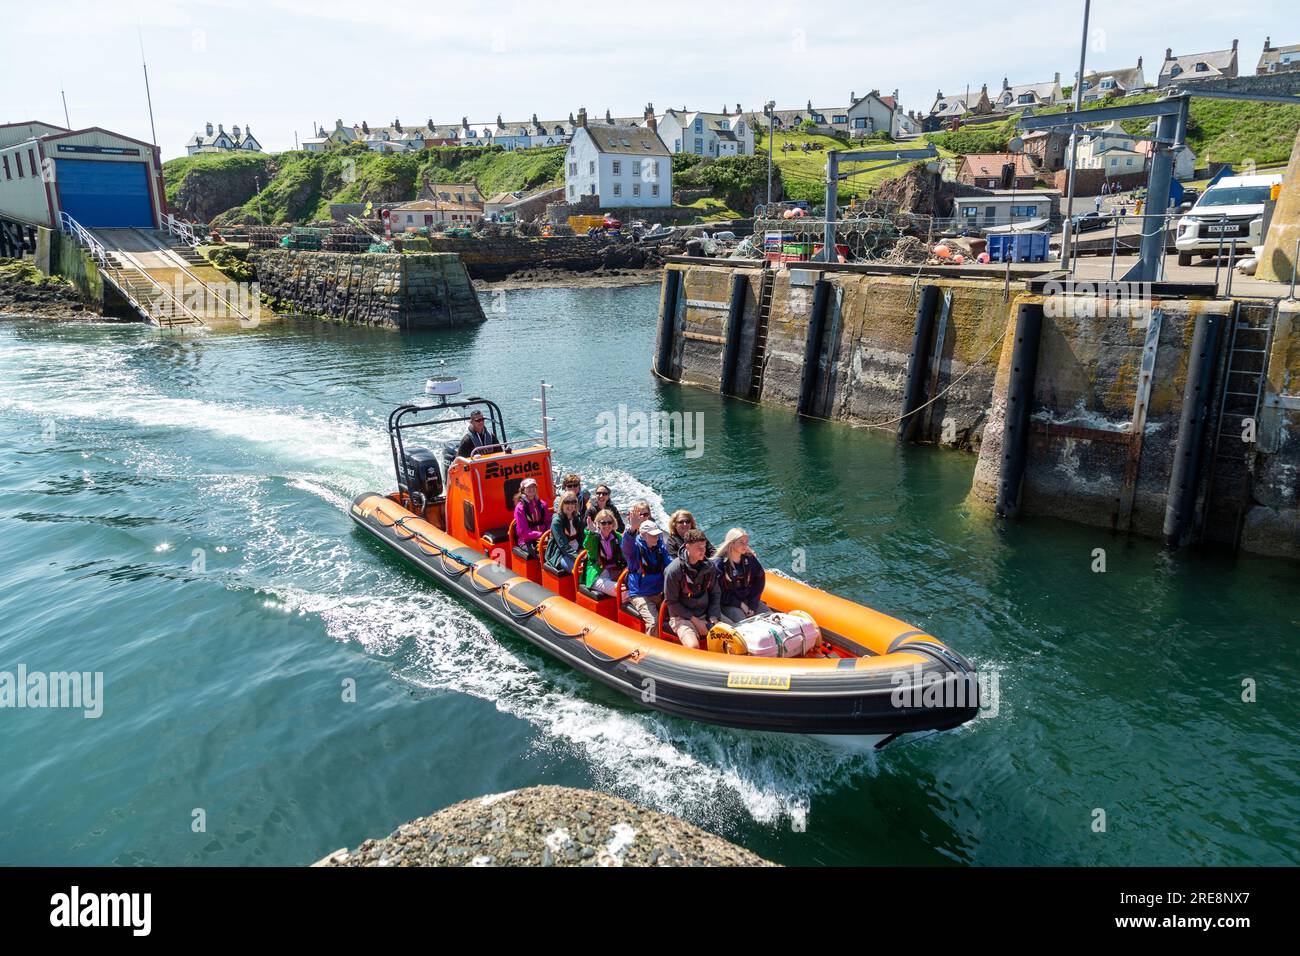 Un groupe de touristes en route pour un voyage touristique sur un bateau pneumatique au départ du port de St Abbs. Banque D'Images